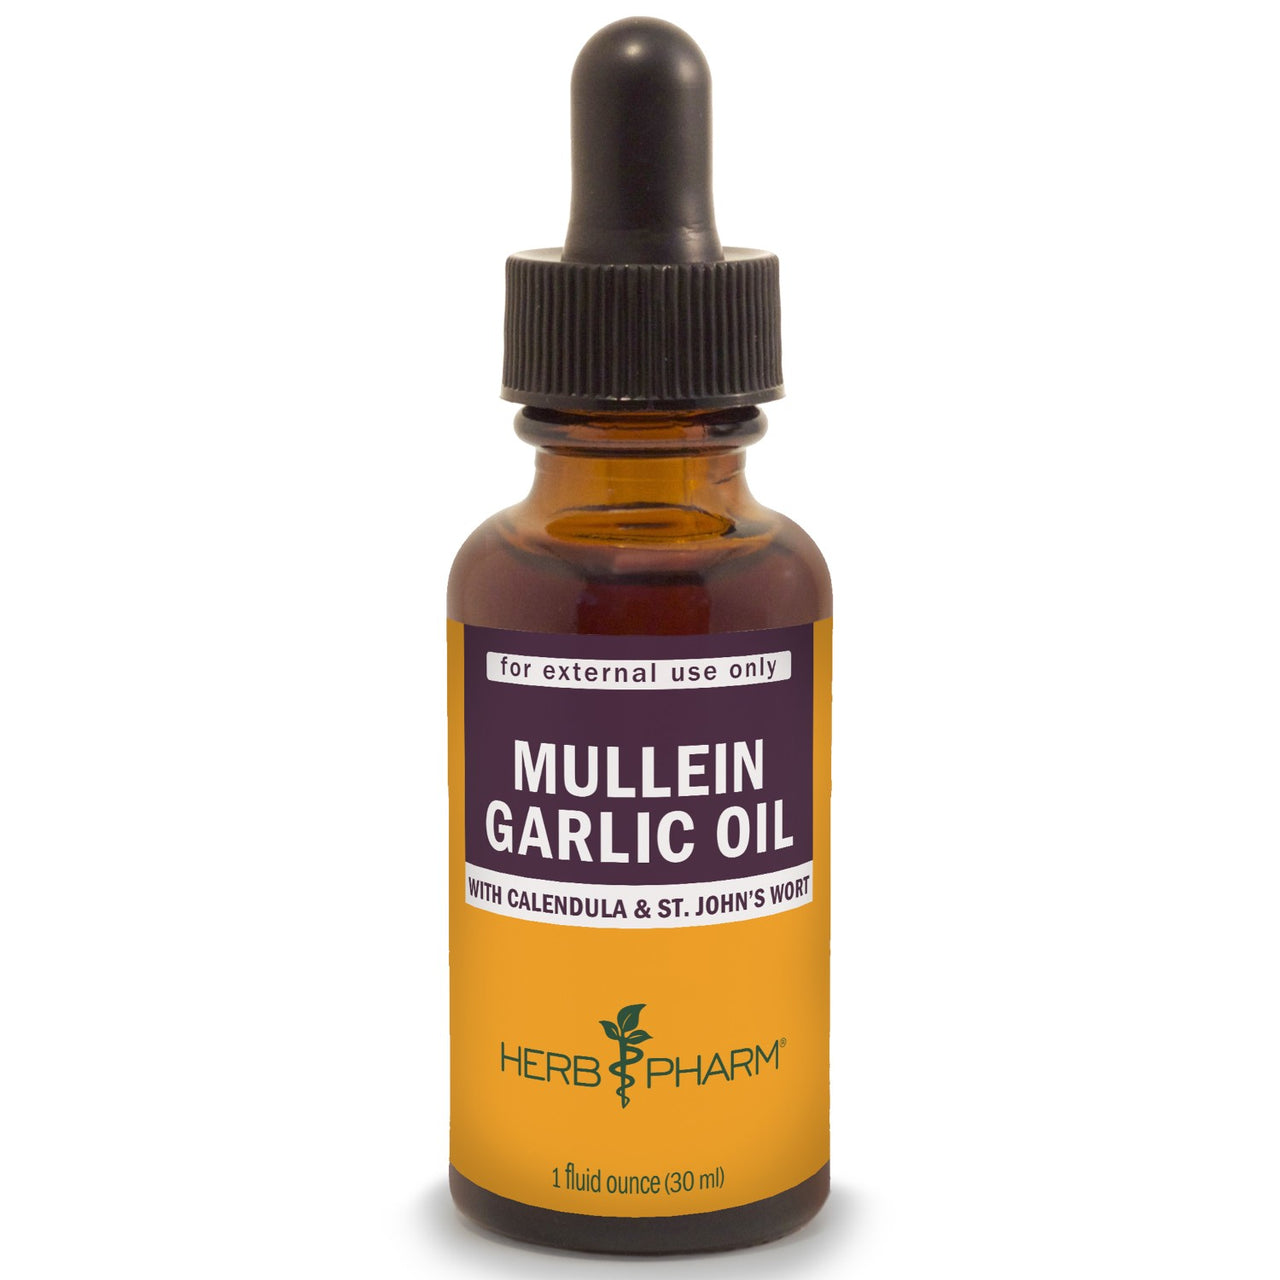 Mullein Garlic Oil - My Village Green